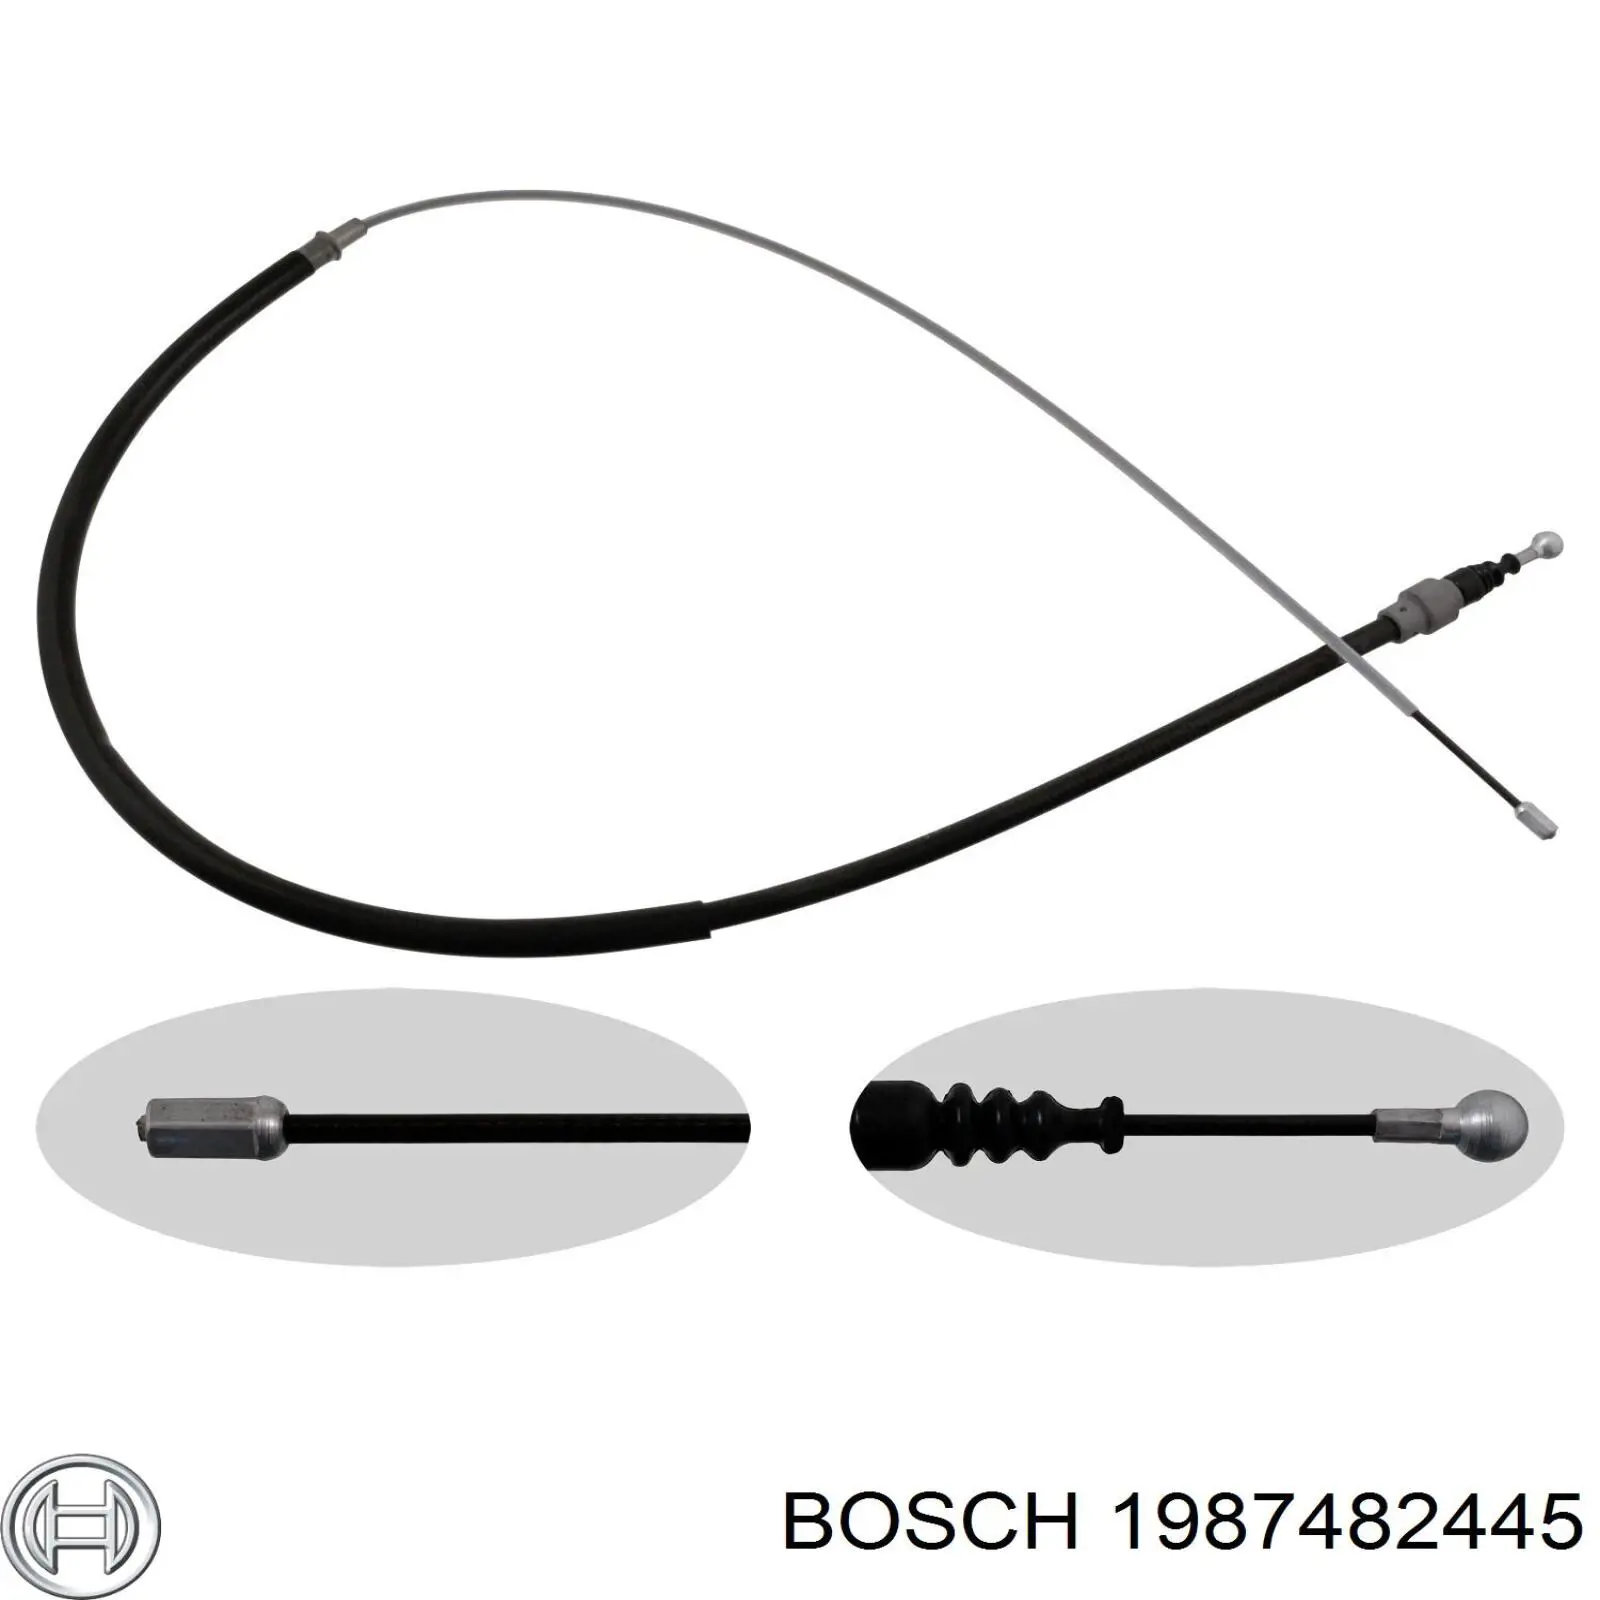 1987482445 Bosch cable de freno de mano trasero derecho/izquierdo